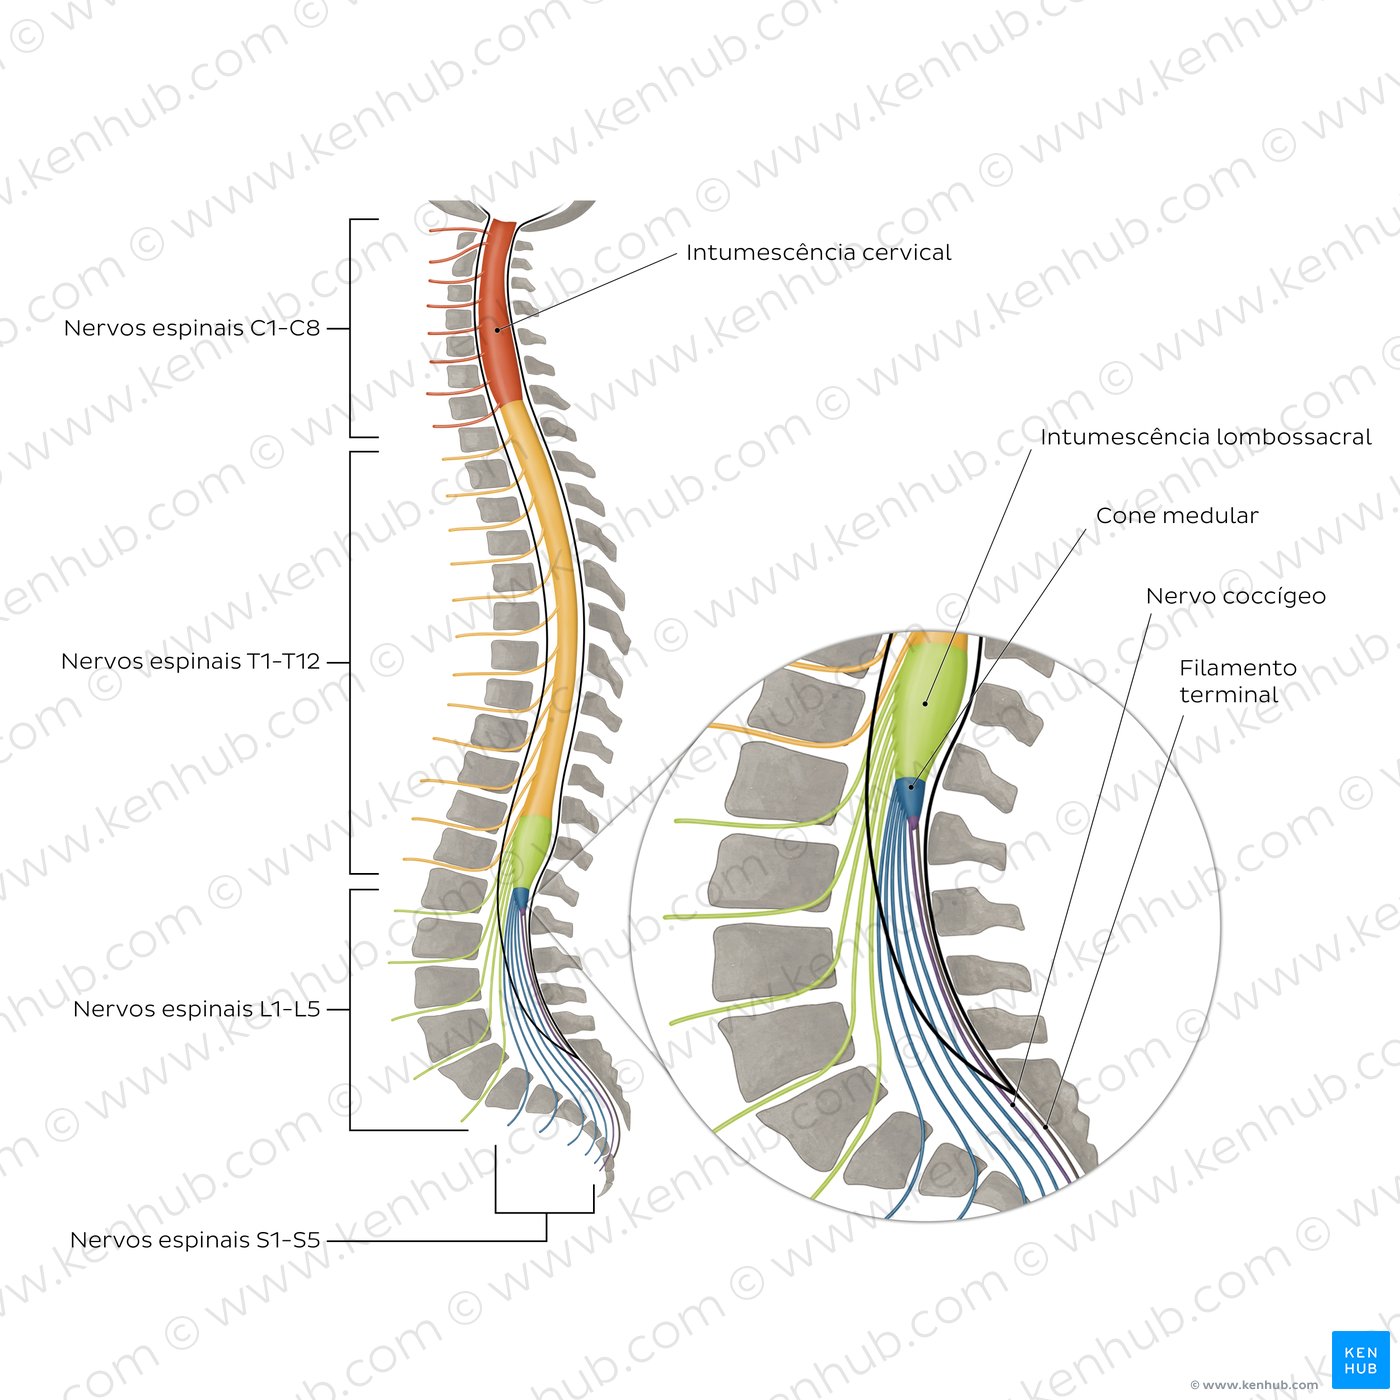 Coluna vertebral e nervos espinais